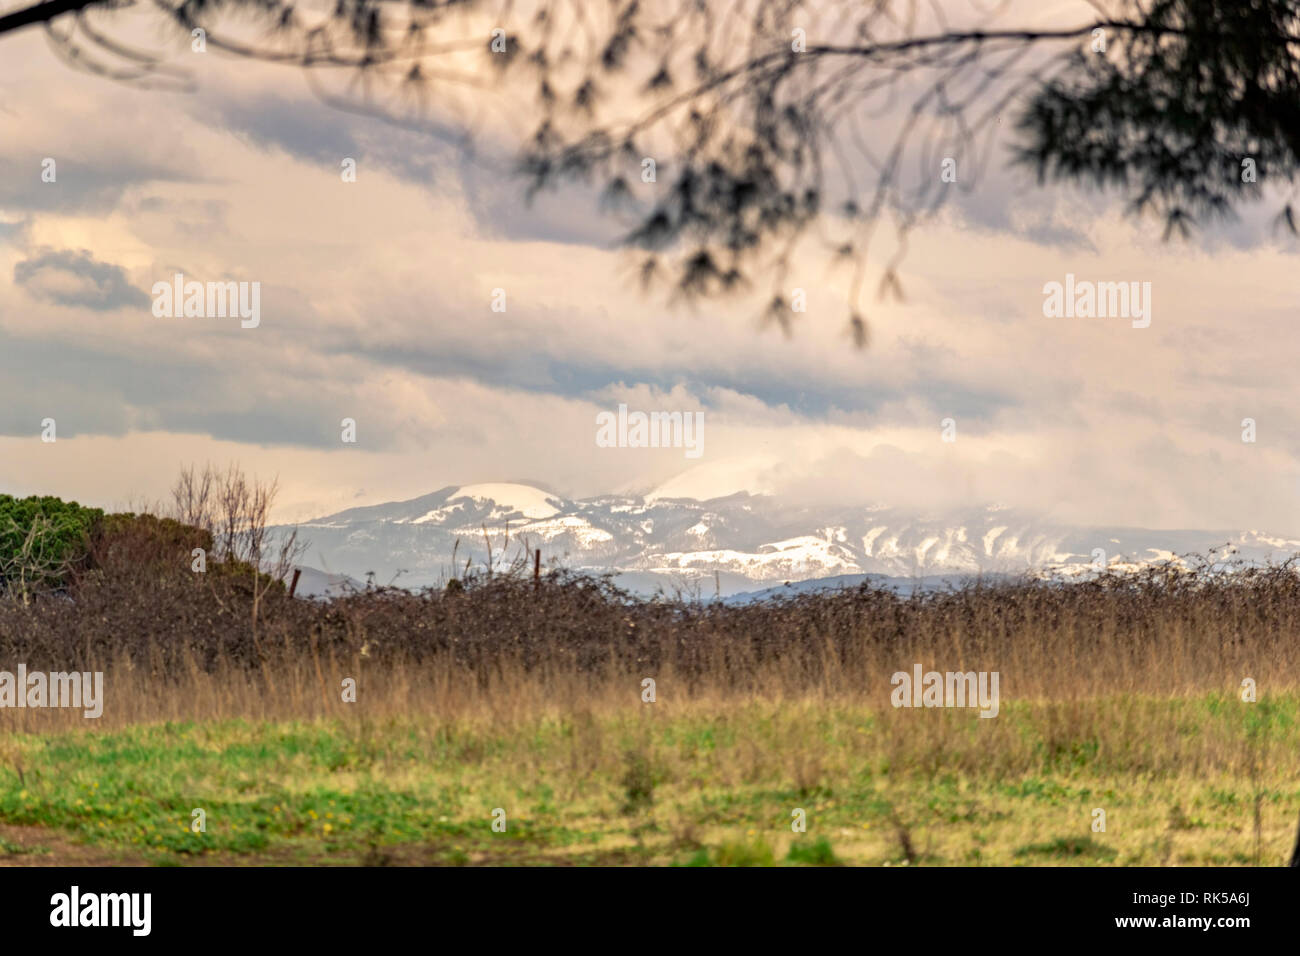 Stagionale paesaggio di campagna con neve montagne nel lontano sullo sfondo Foto Stock